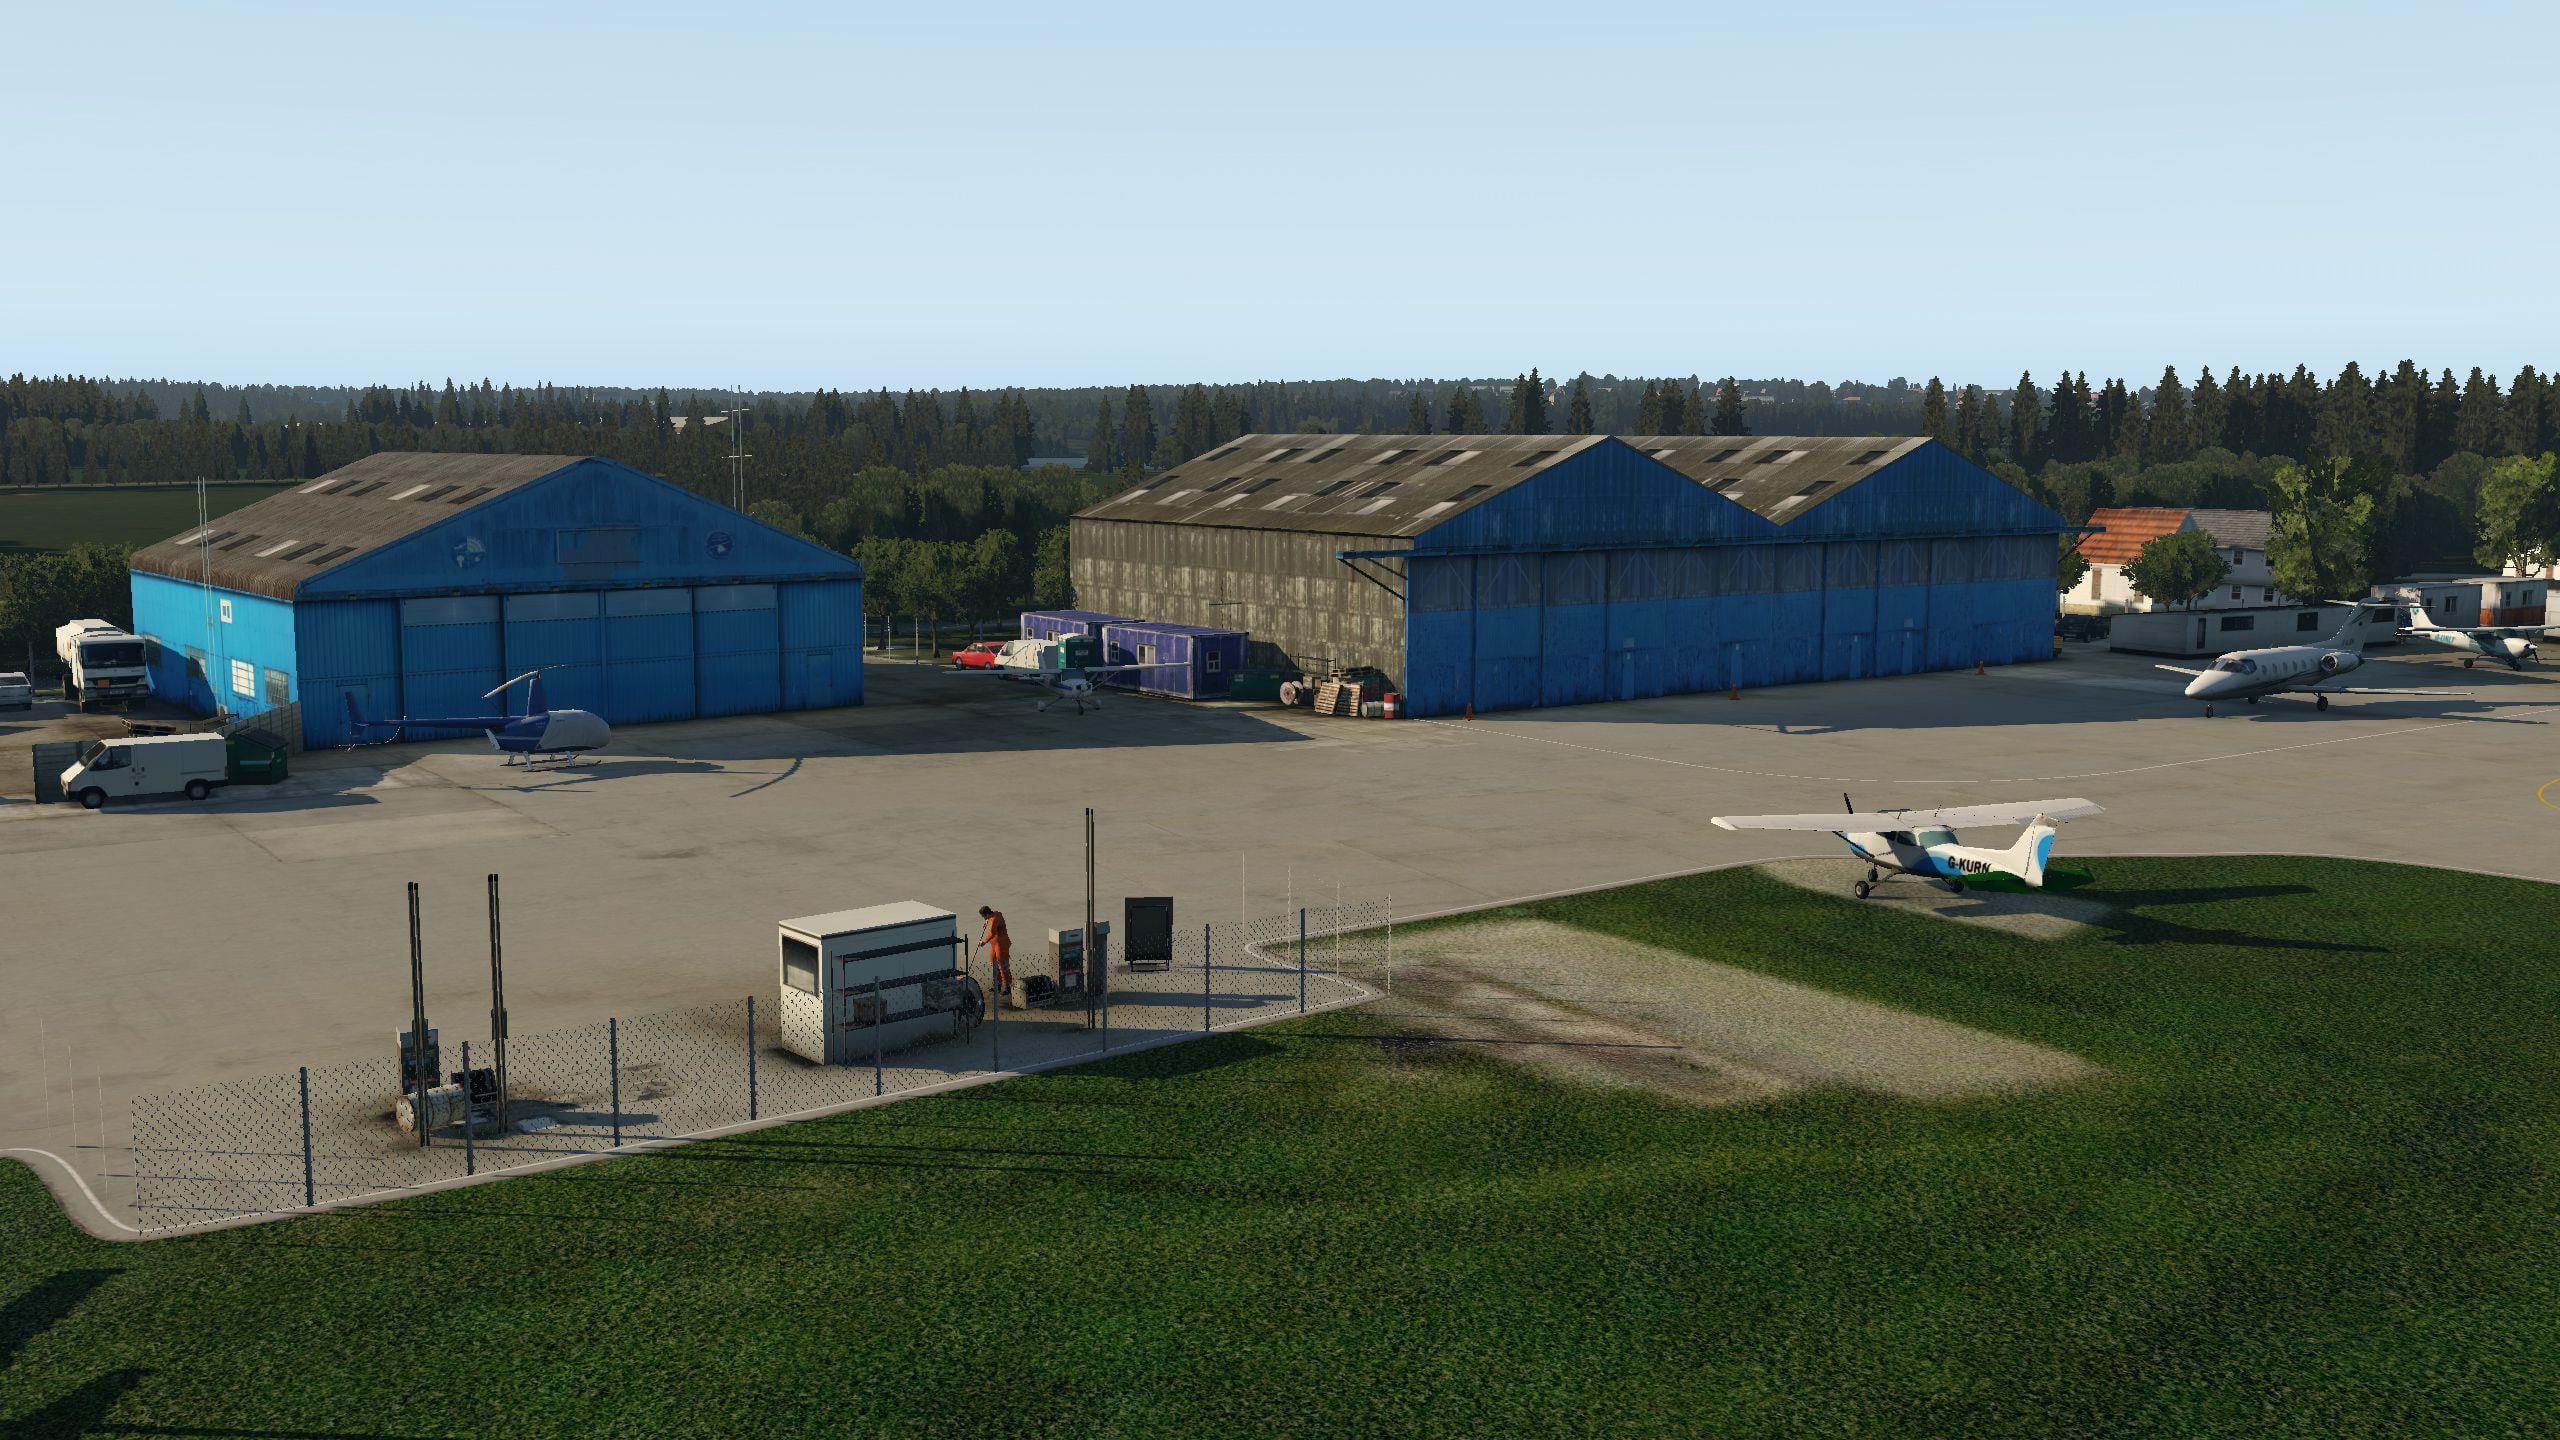 ORBX Elstree Aerodrome (EGTR) for X-plane